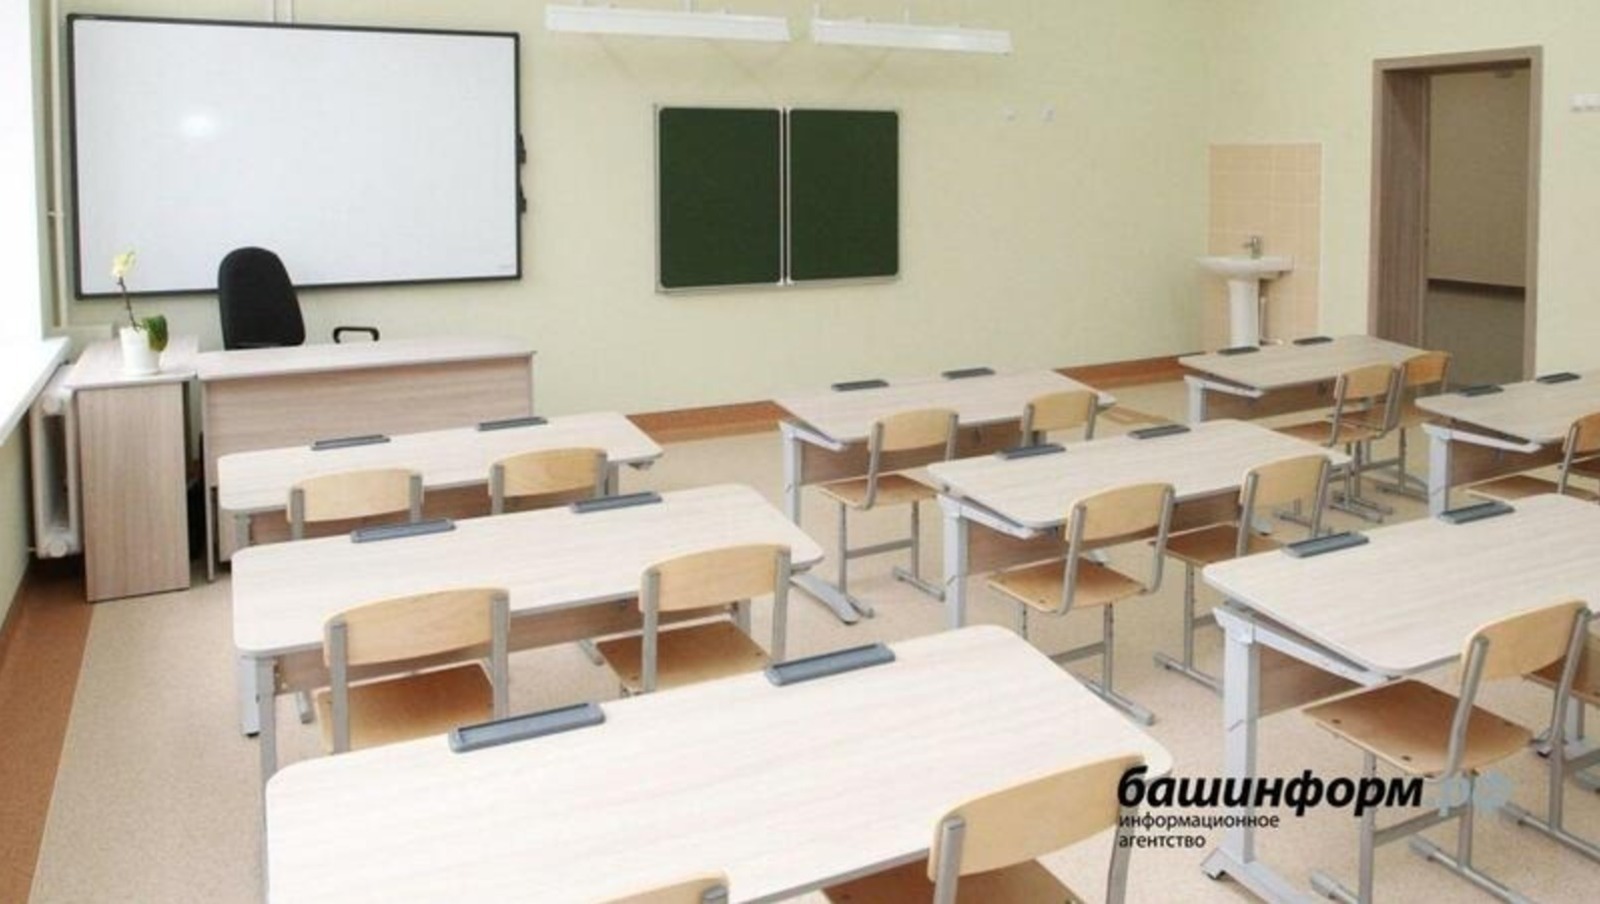 Колледжи и техникумы Башкирии дополнительно получат 1000 бюджетных мест